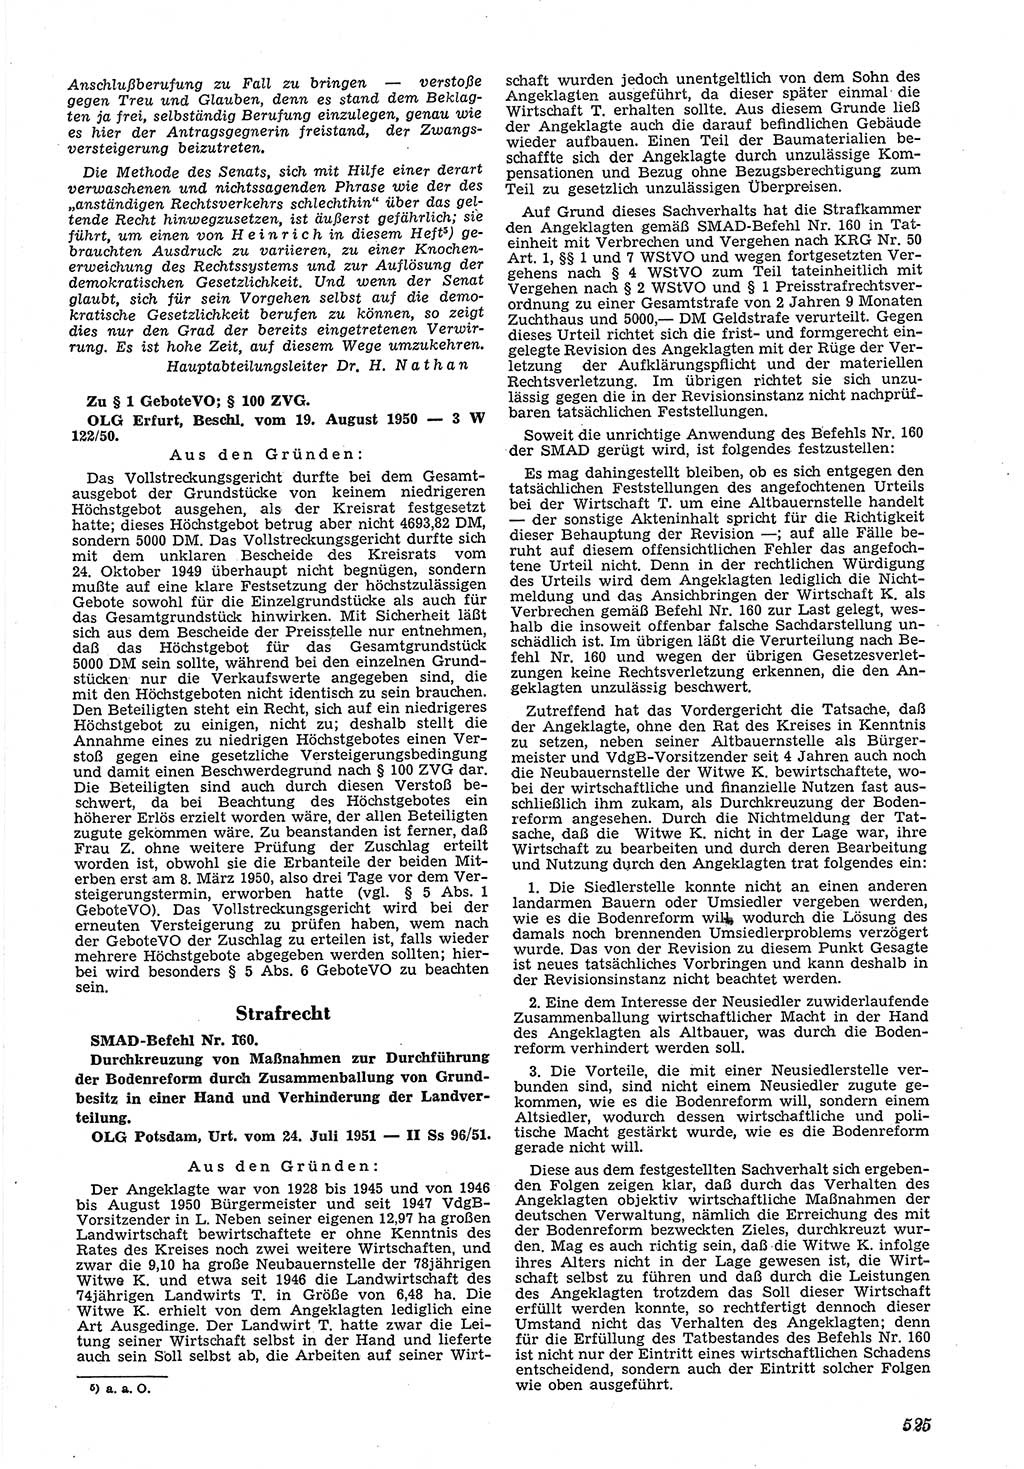 Neue Justiz (NJ), Zeitschrift für Recht und Rechtswissenschaft [Deutsche Demokratische Republik (DDR)], 5. Jahrgang 1951, Seite 525 (NJ DDR 1951, S. 525)